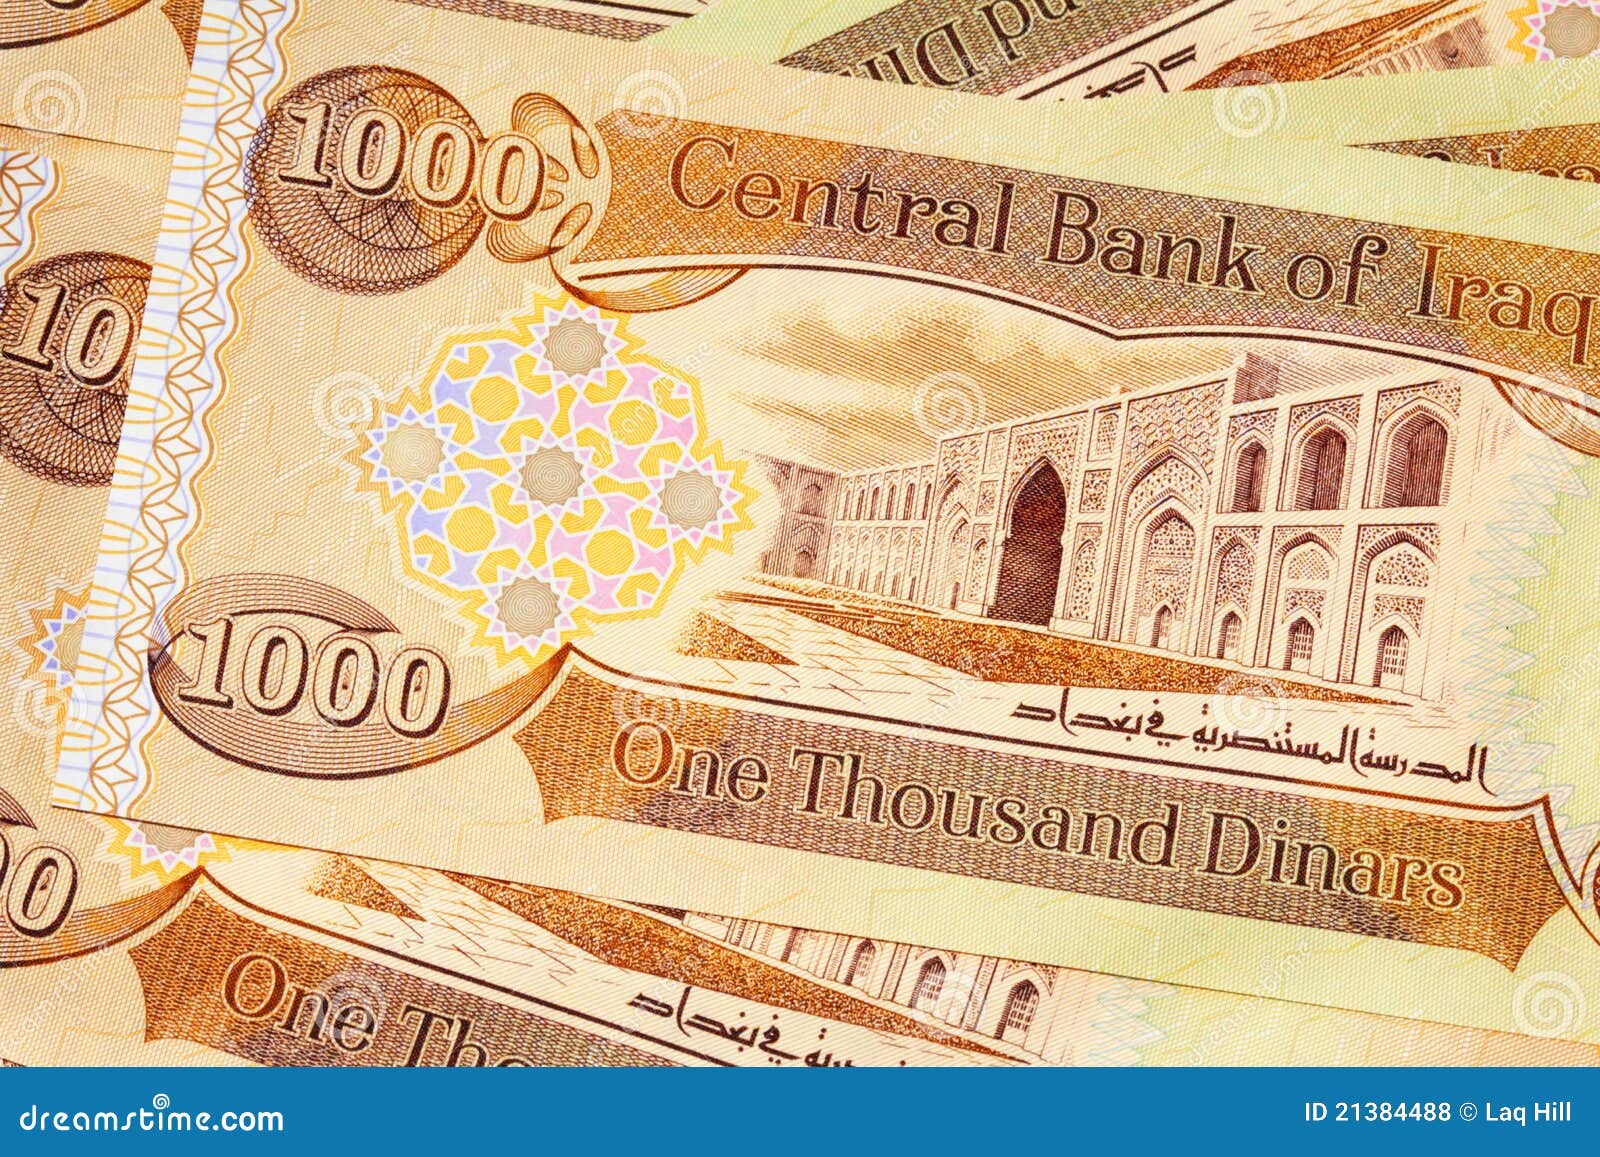 iraq 1000 dinar notes cbi